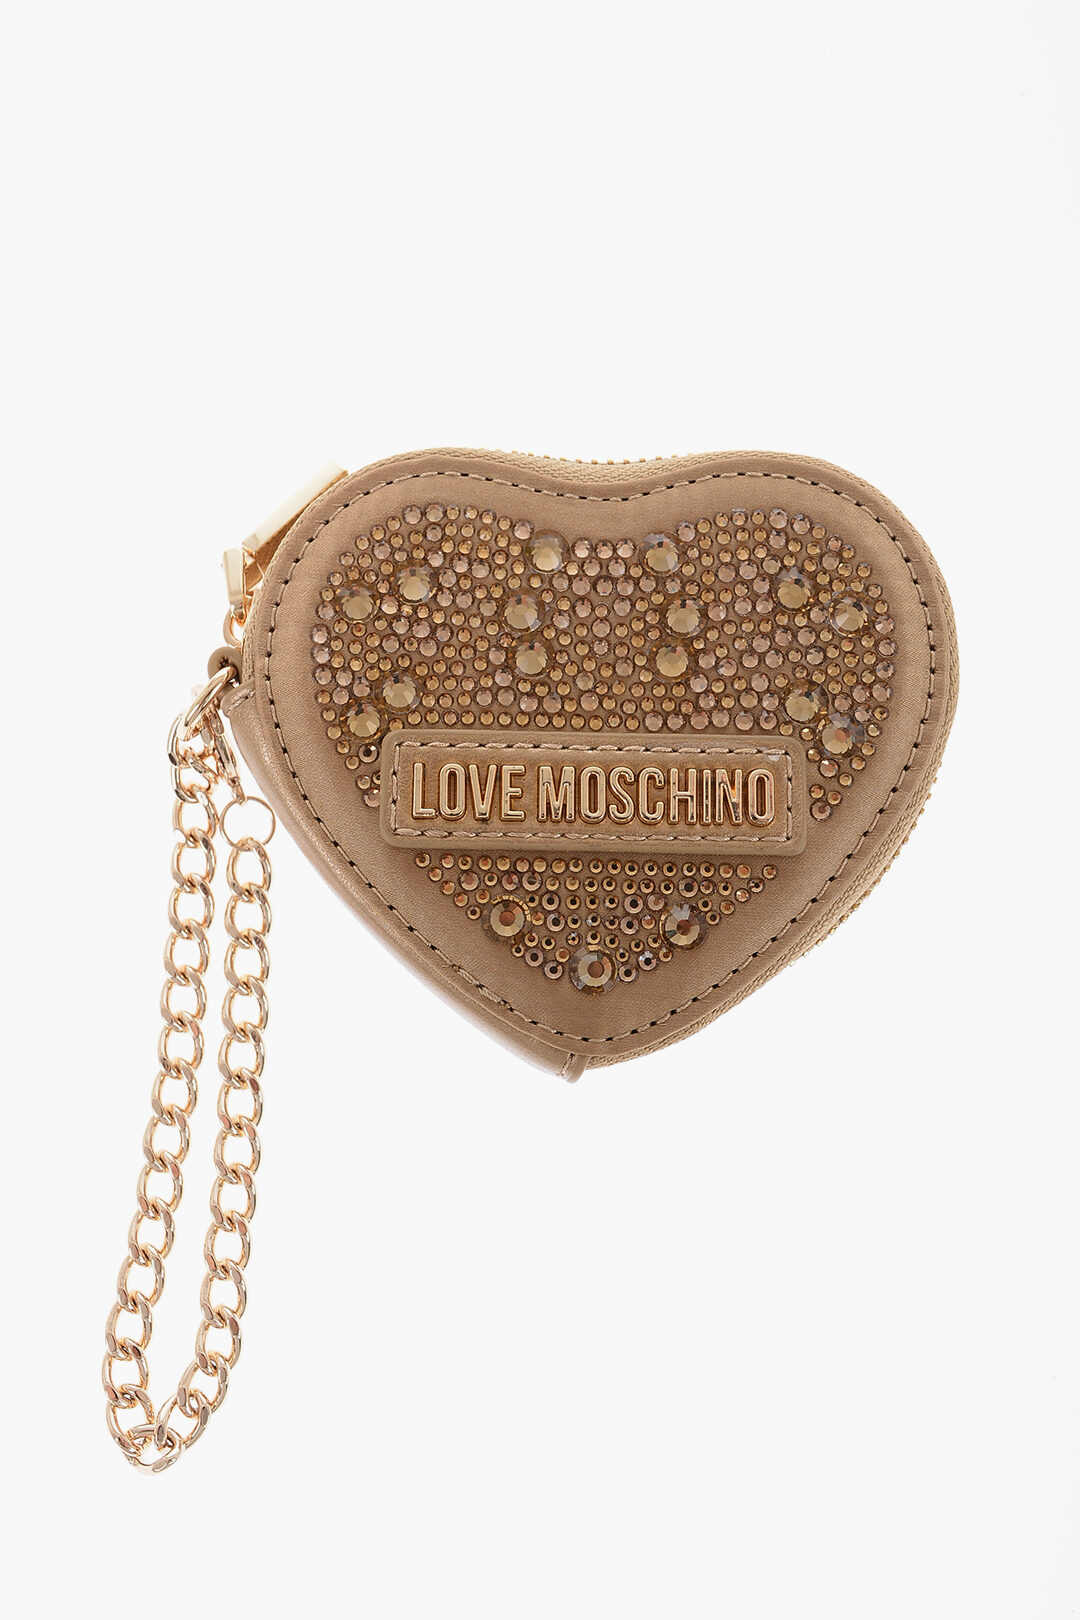 Lovestruck Heart Glass Beaded Coin Purse – YaYa & Co.